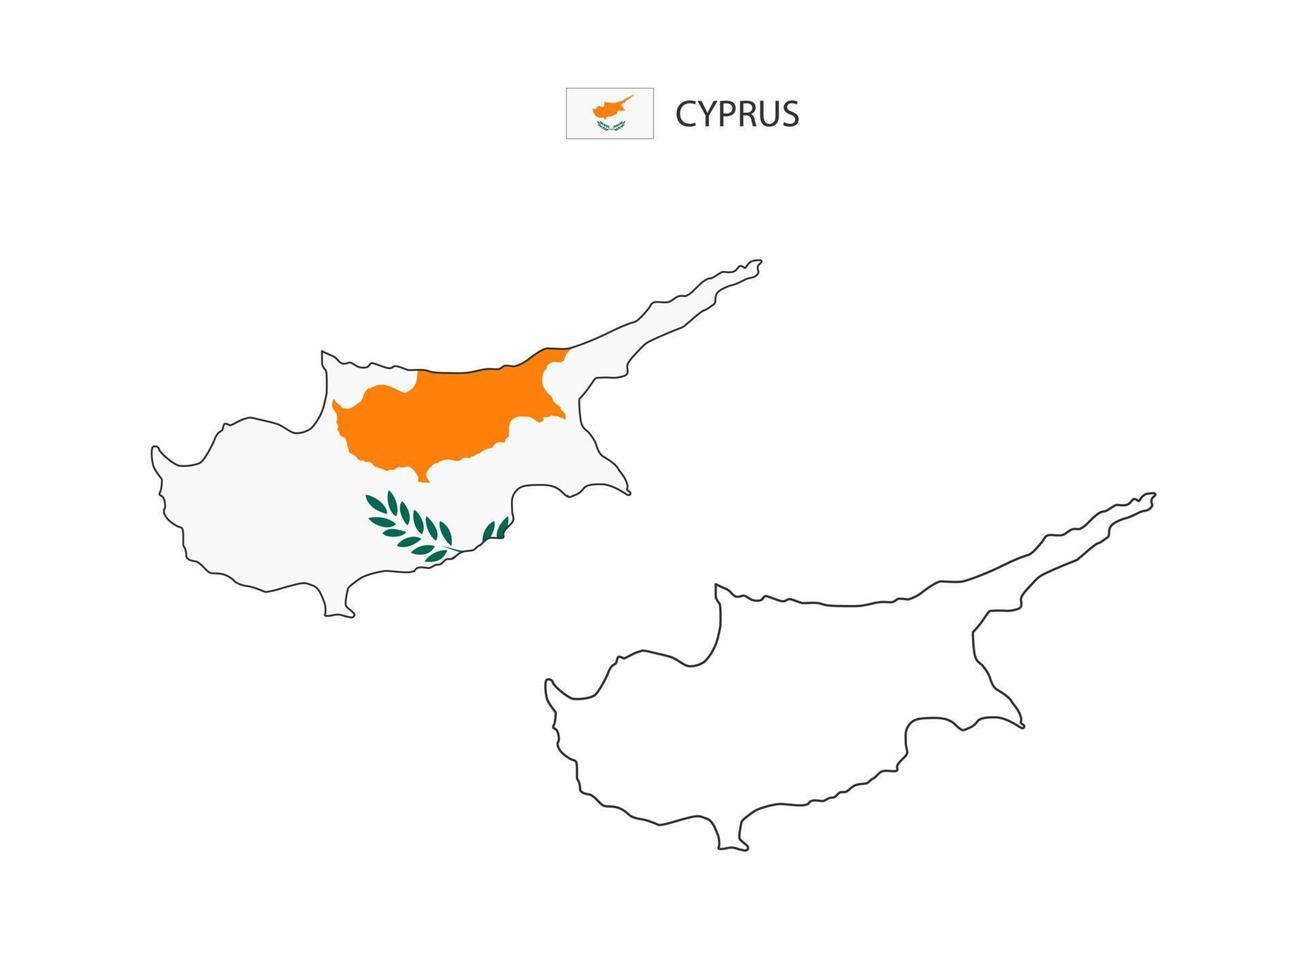 Cyprus kaart stad vector verdeeld door schets eenvoud stijl. hebben 2 versies, zwart dun lijn versie en kleur van land vlag versie. beide kaart waren Aan de wit achtergrond.